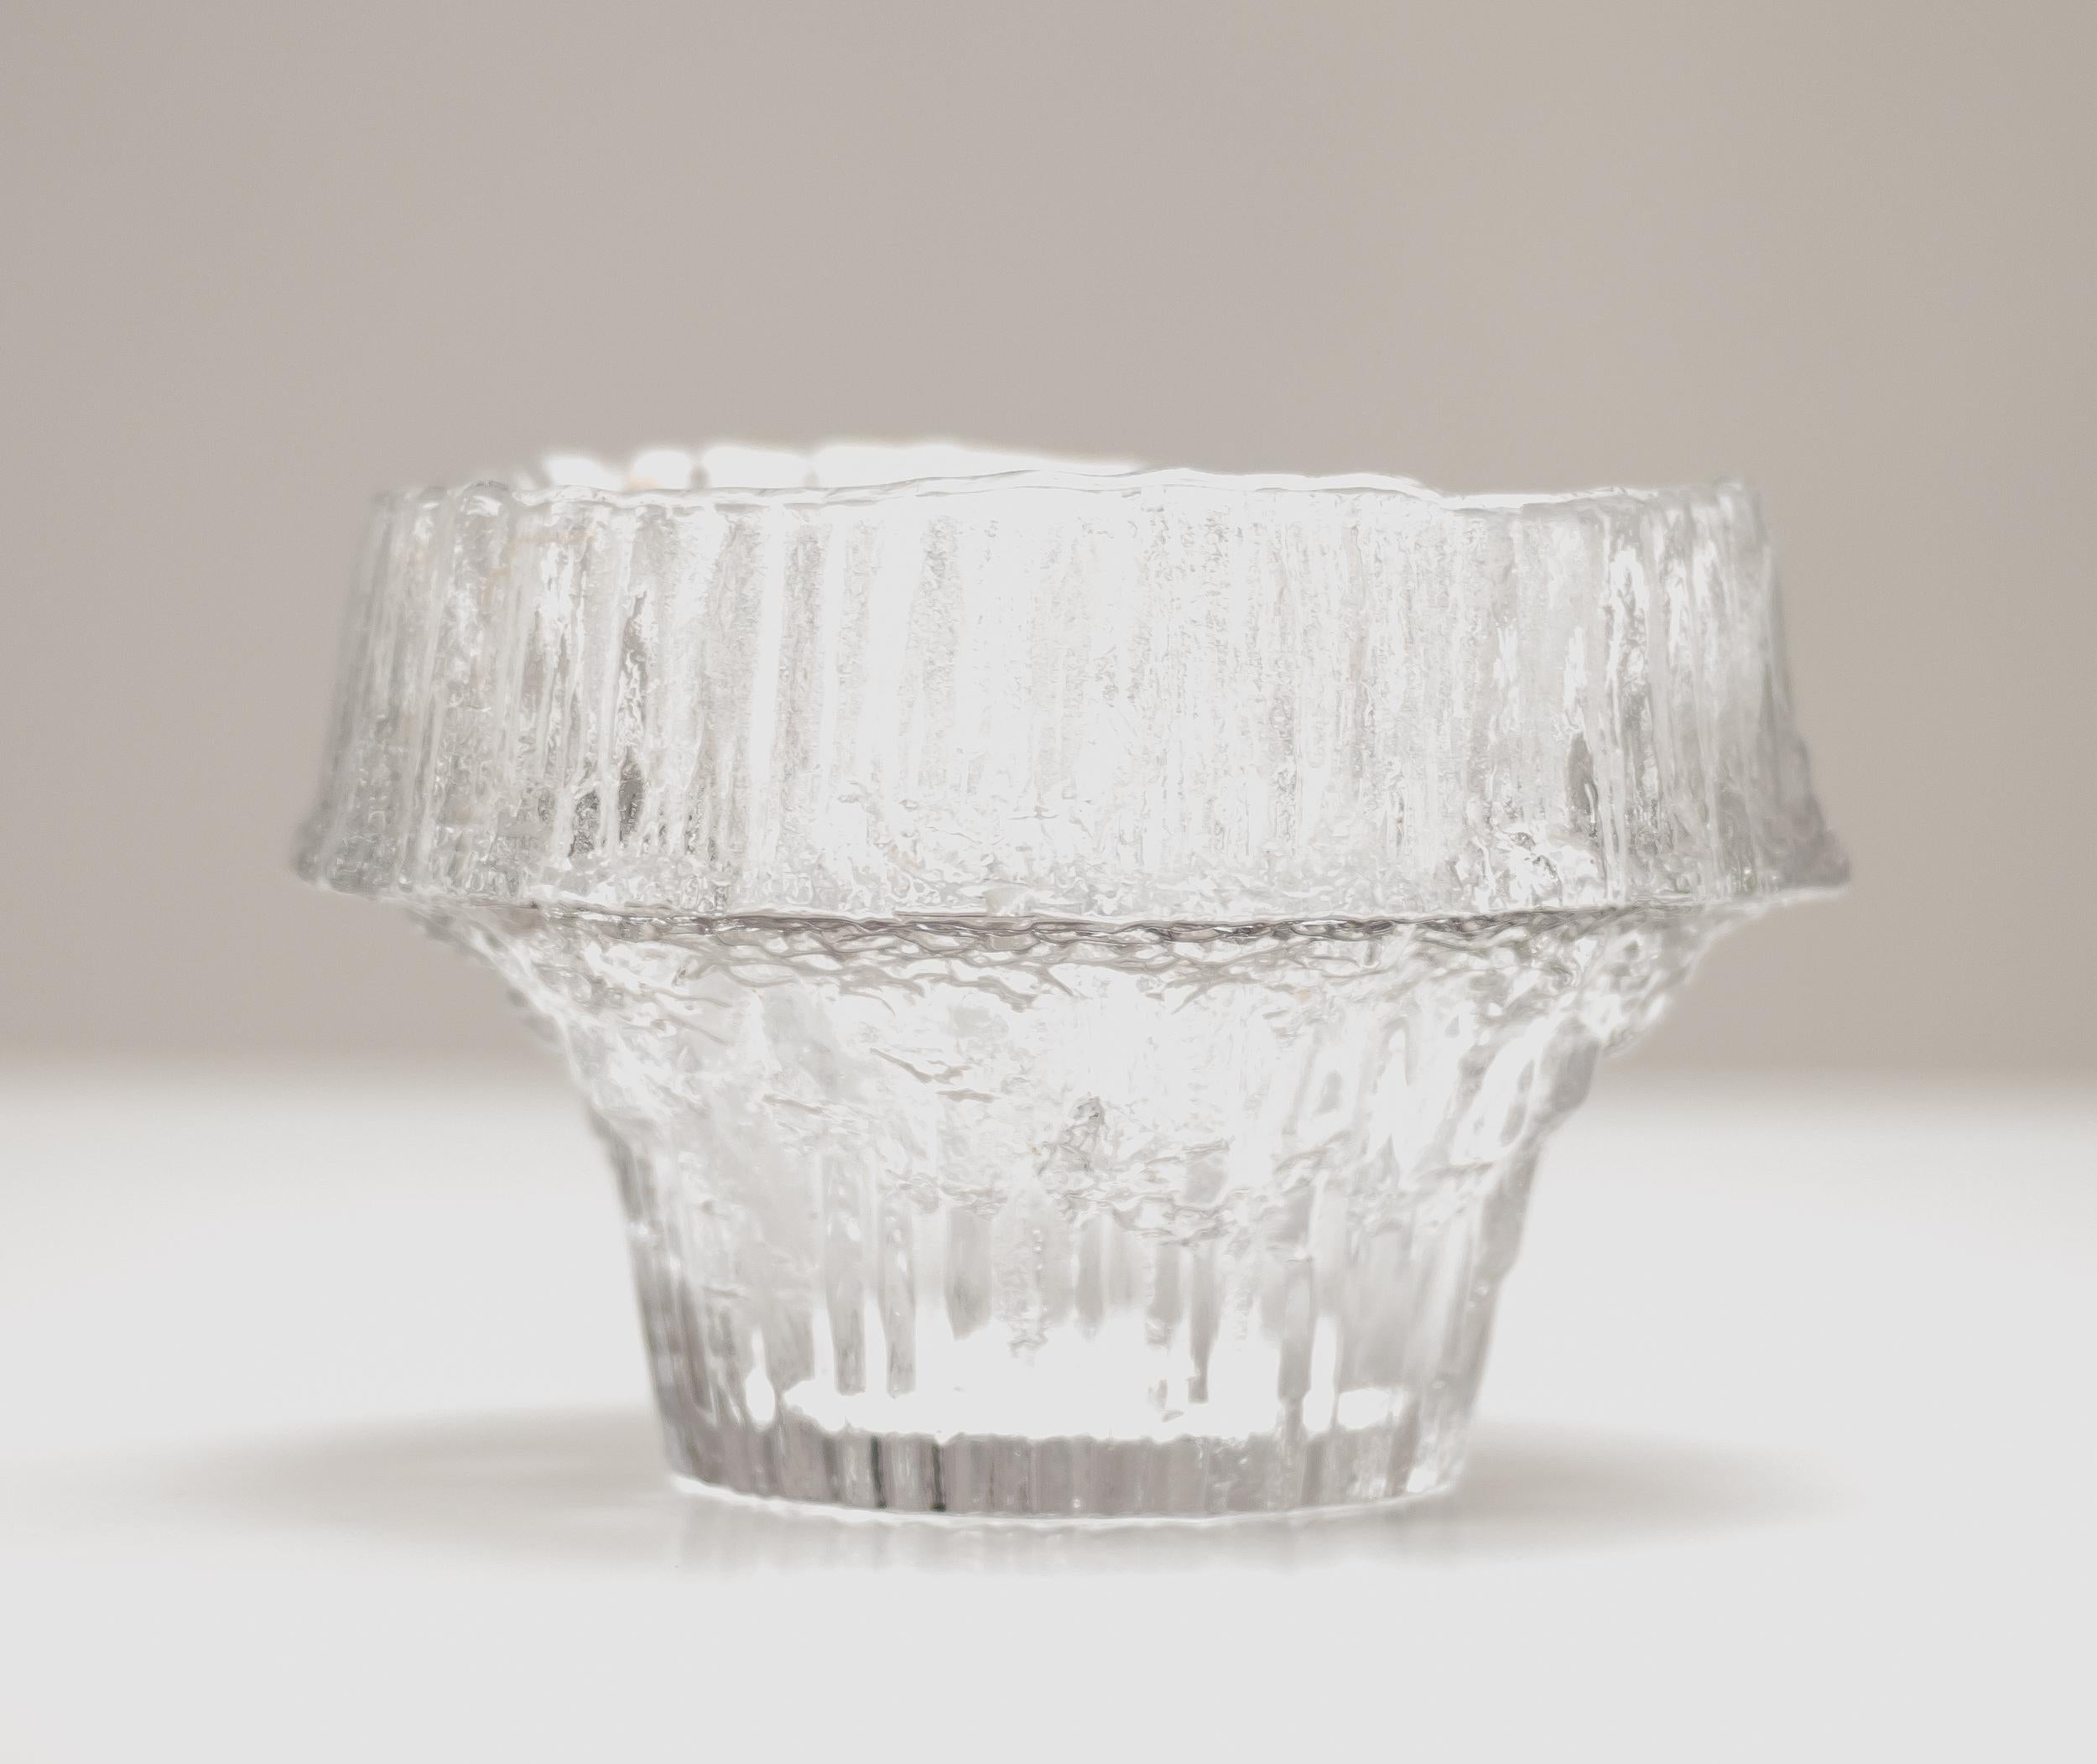 Große Tapio Wirkkala Stellaria Schale #3450 von Iittala aus mundgeblasenem Klarglas.
Eingraviert: Tapio Wirkkala 3450.
Markiert mit einem Rest eines Iittala-Aufklebers.

Tapio Wirkkala (1915-1985) war ein vielseitiges Designgenie, das weithin als